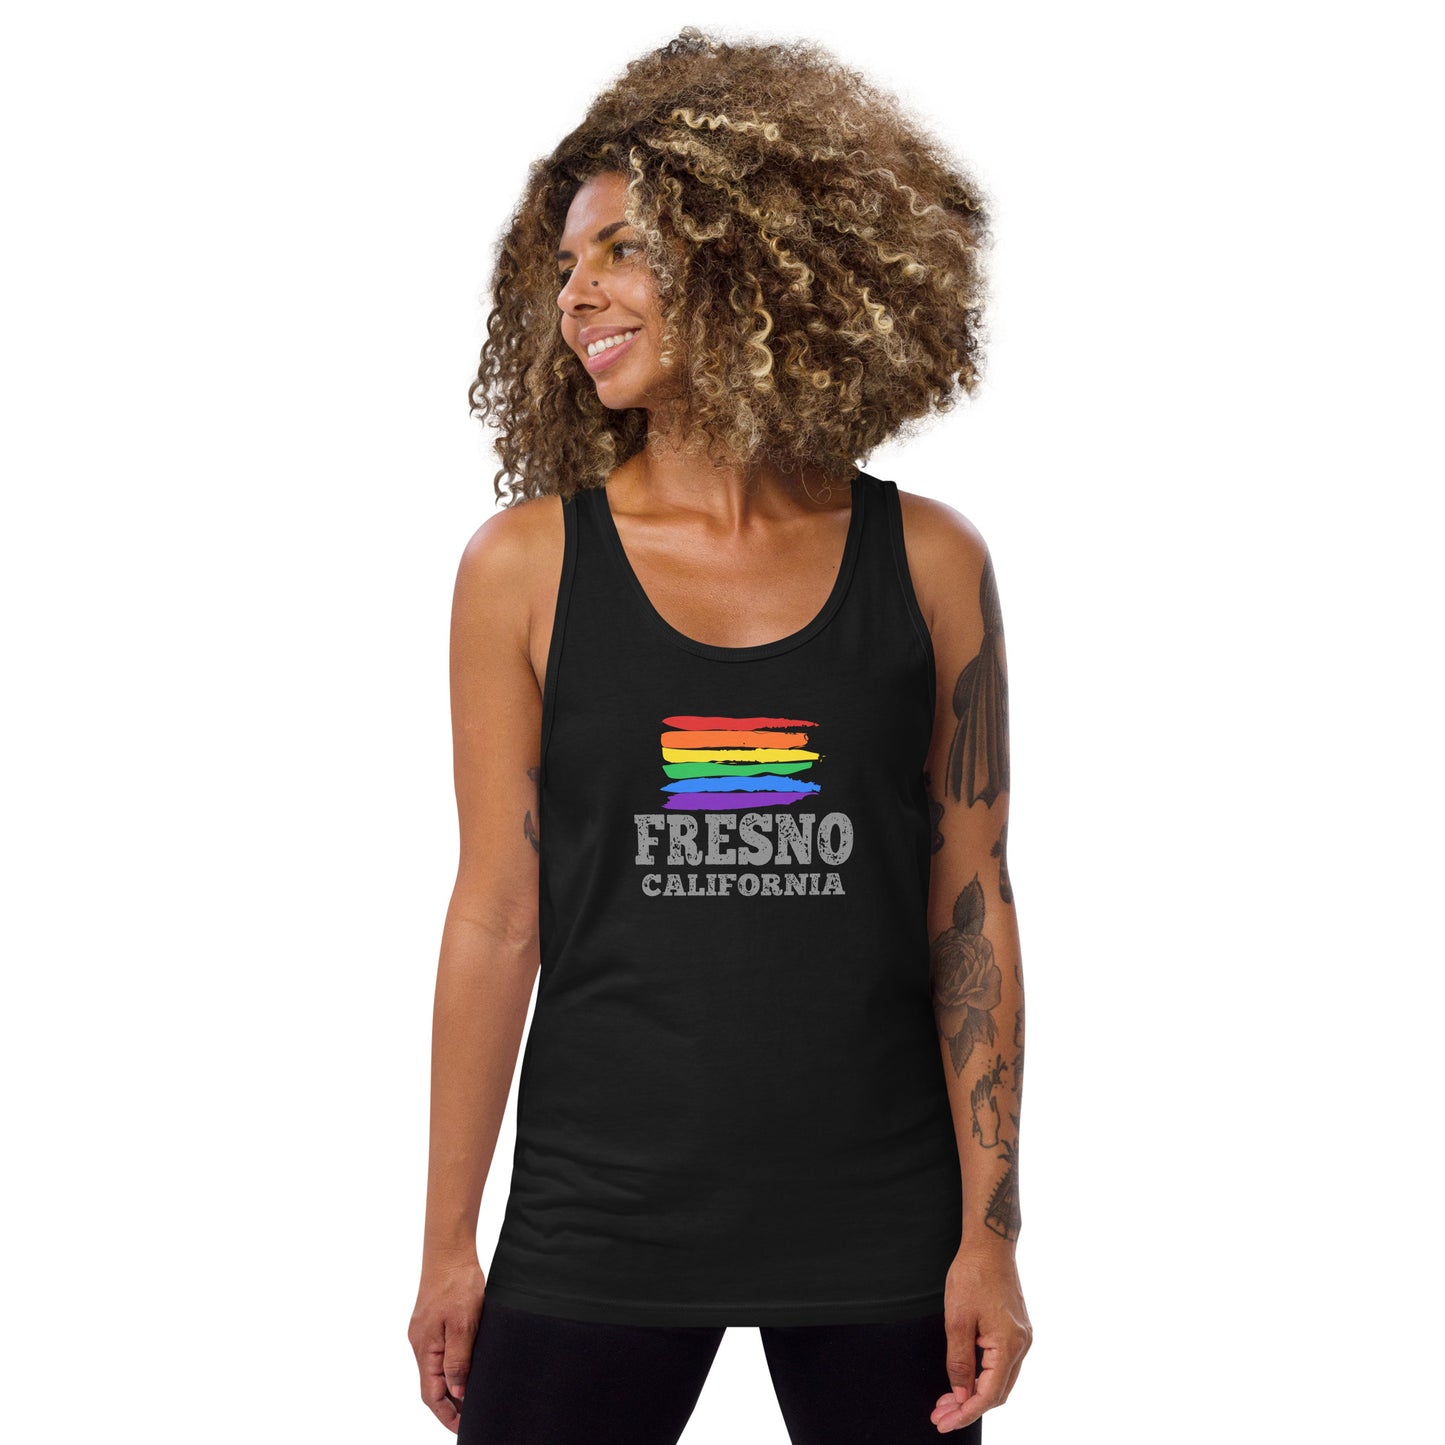 Fresno California LGBTQ+ Gay Pride Tank Top - gay pride apparel